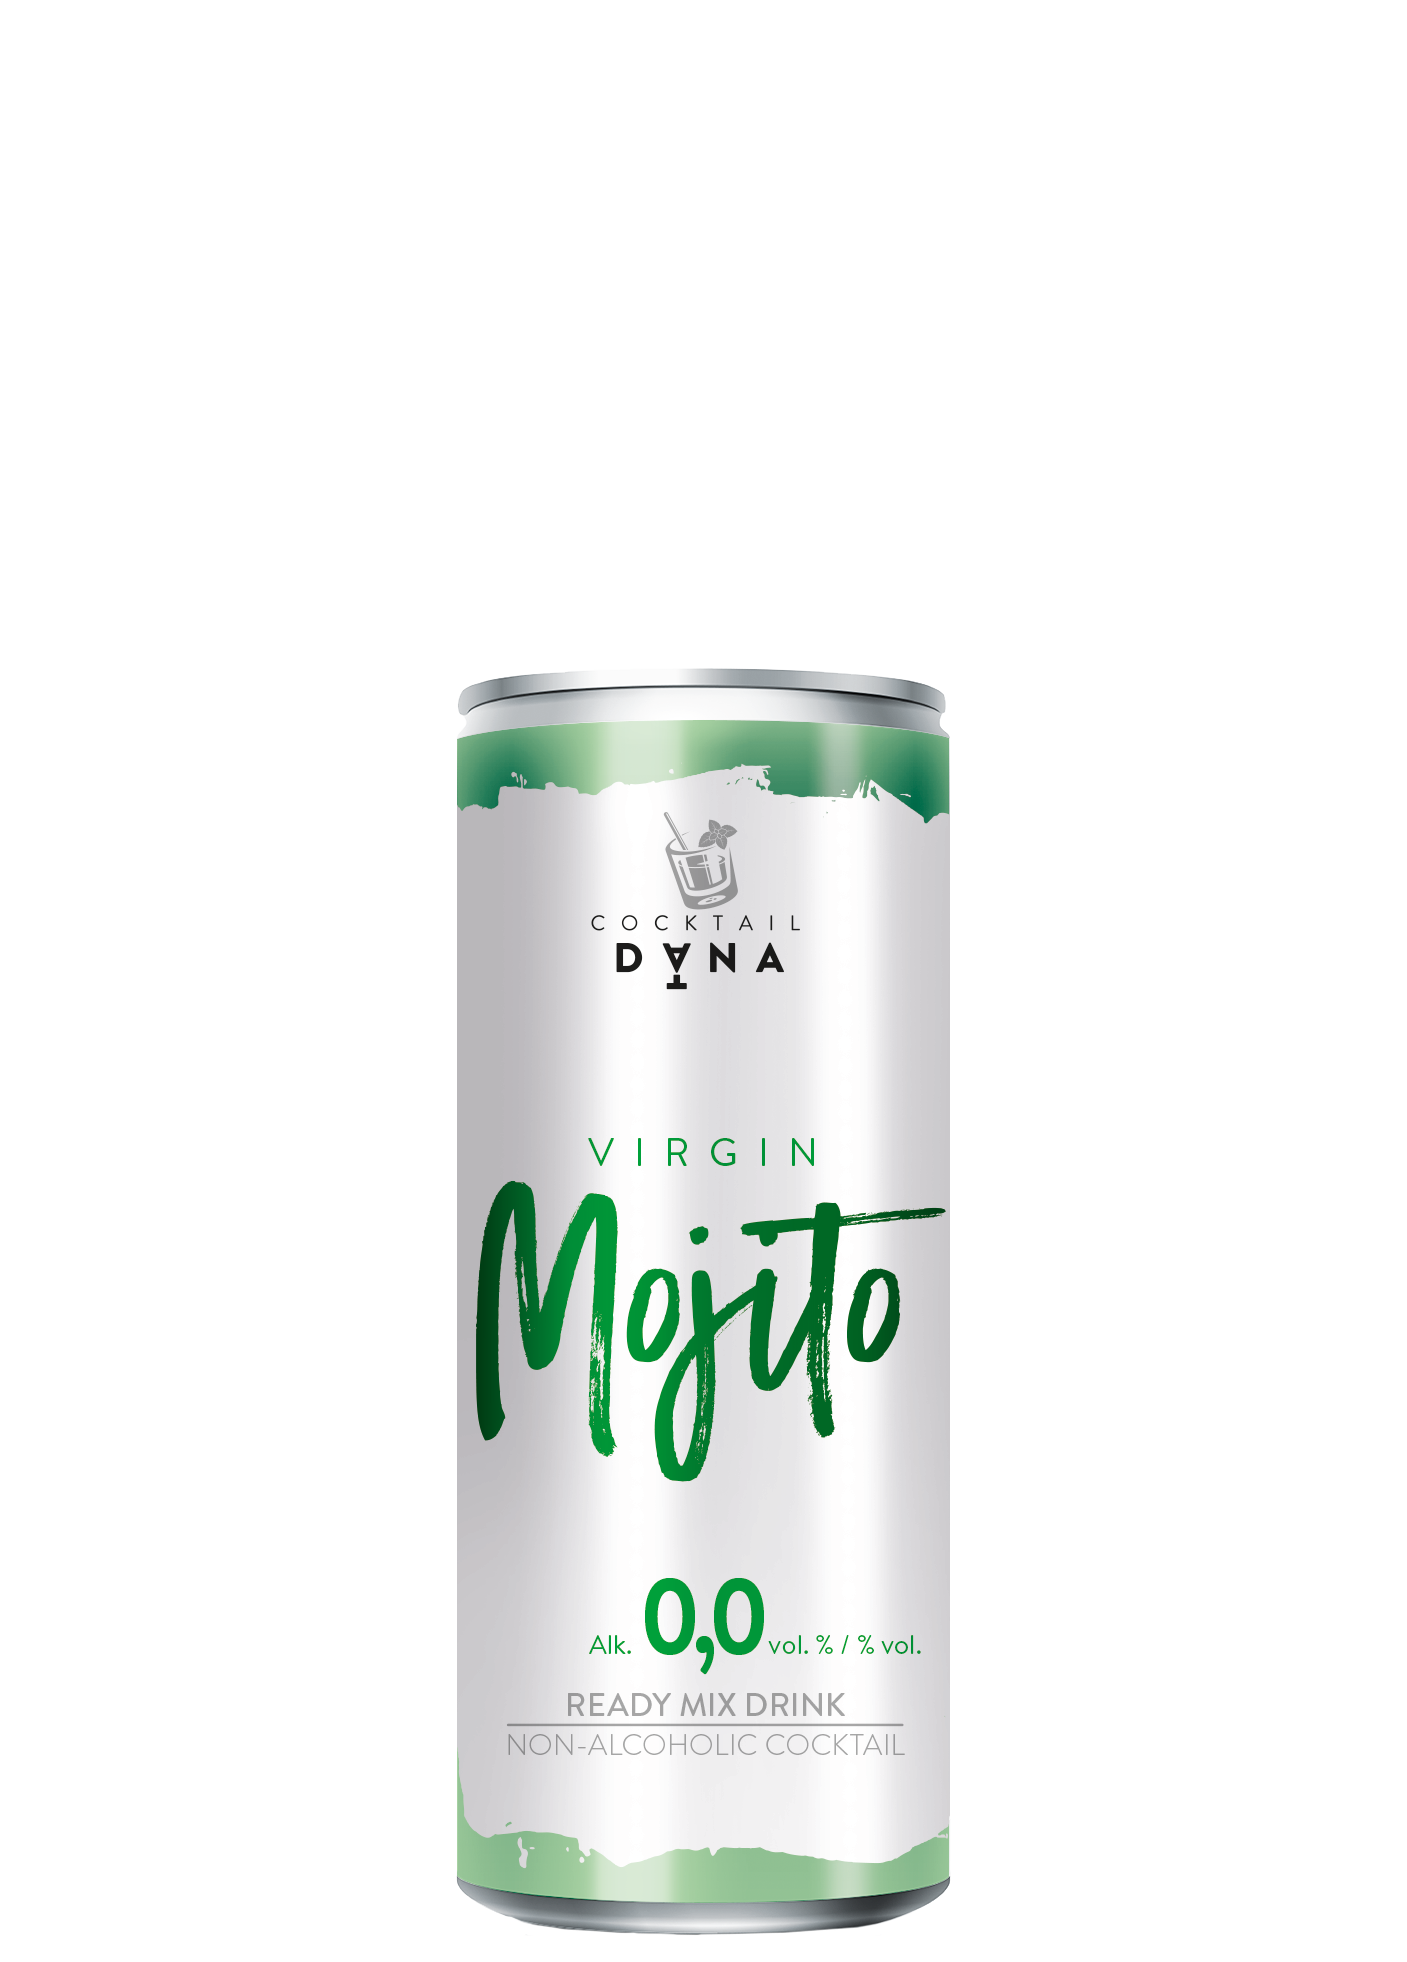 Dana Cocktail Mojito Virgin, alk: 0,0 vol. %